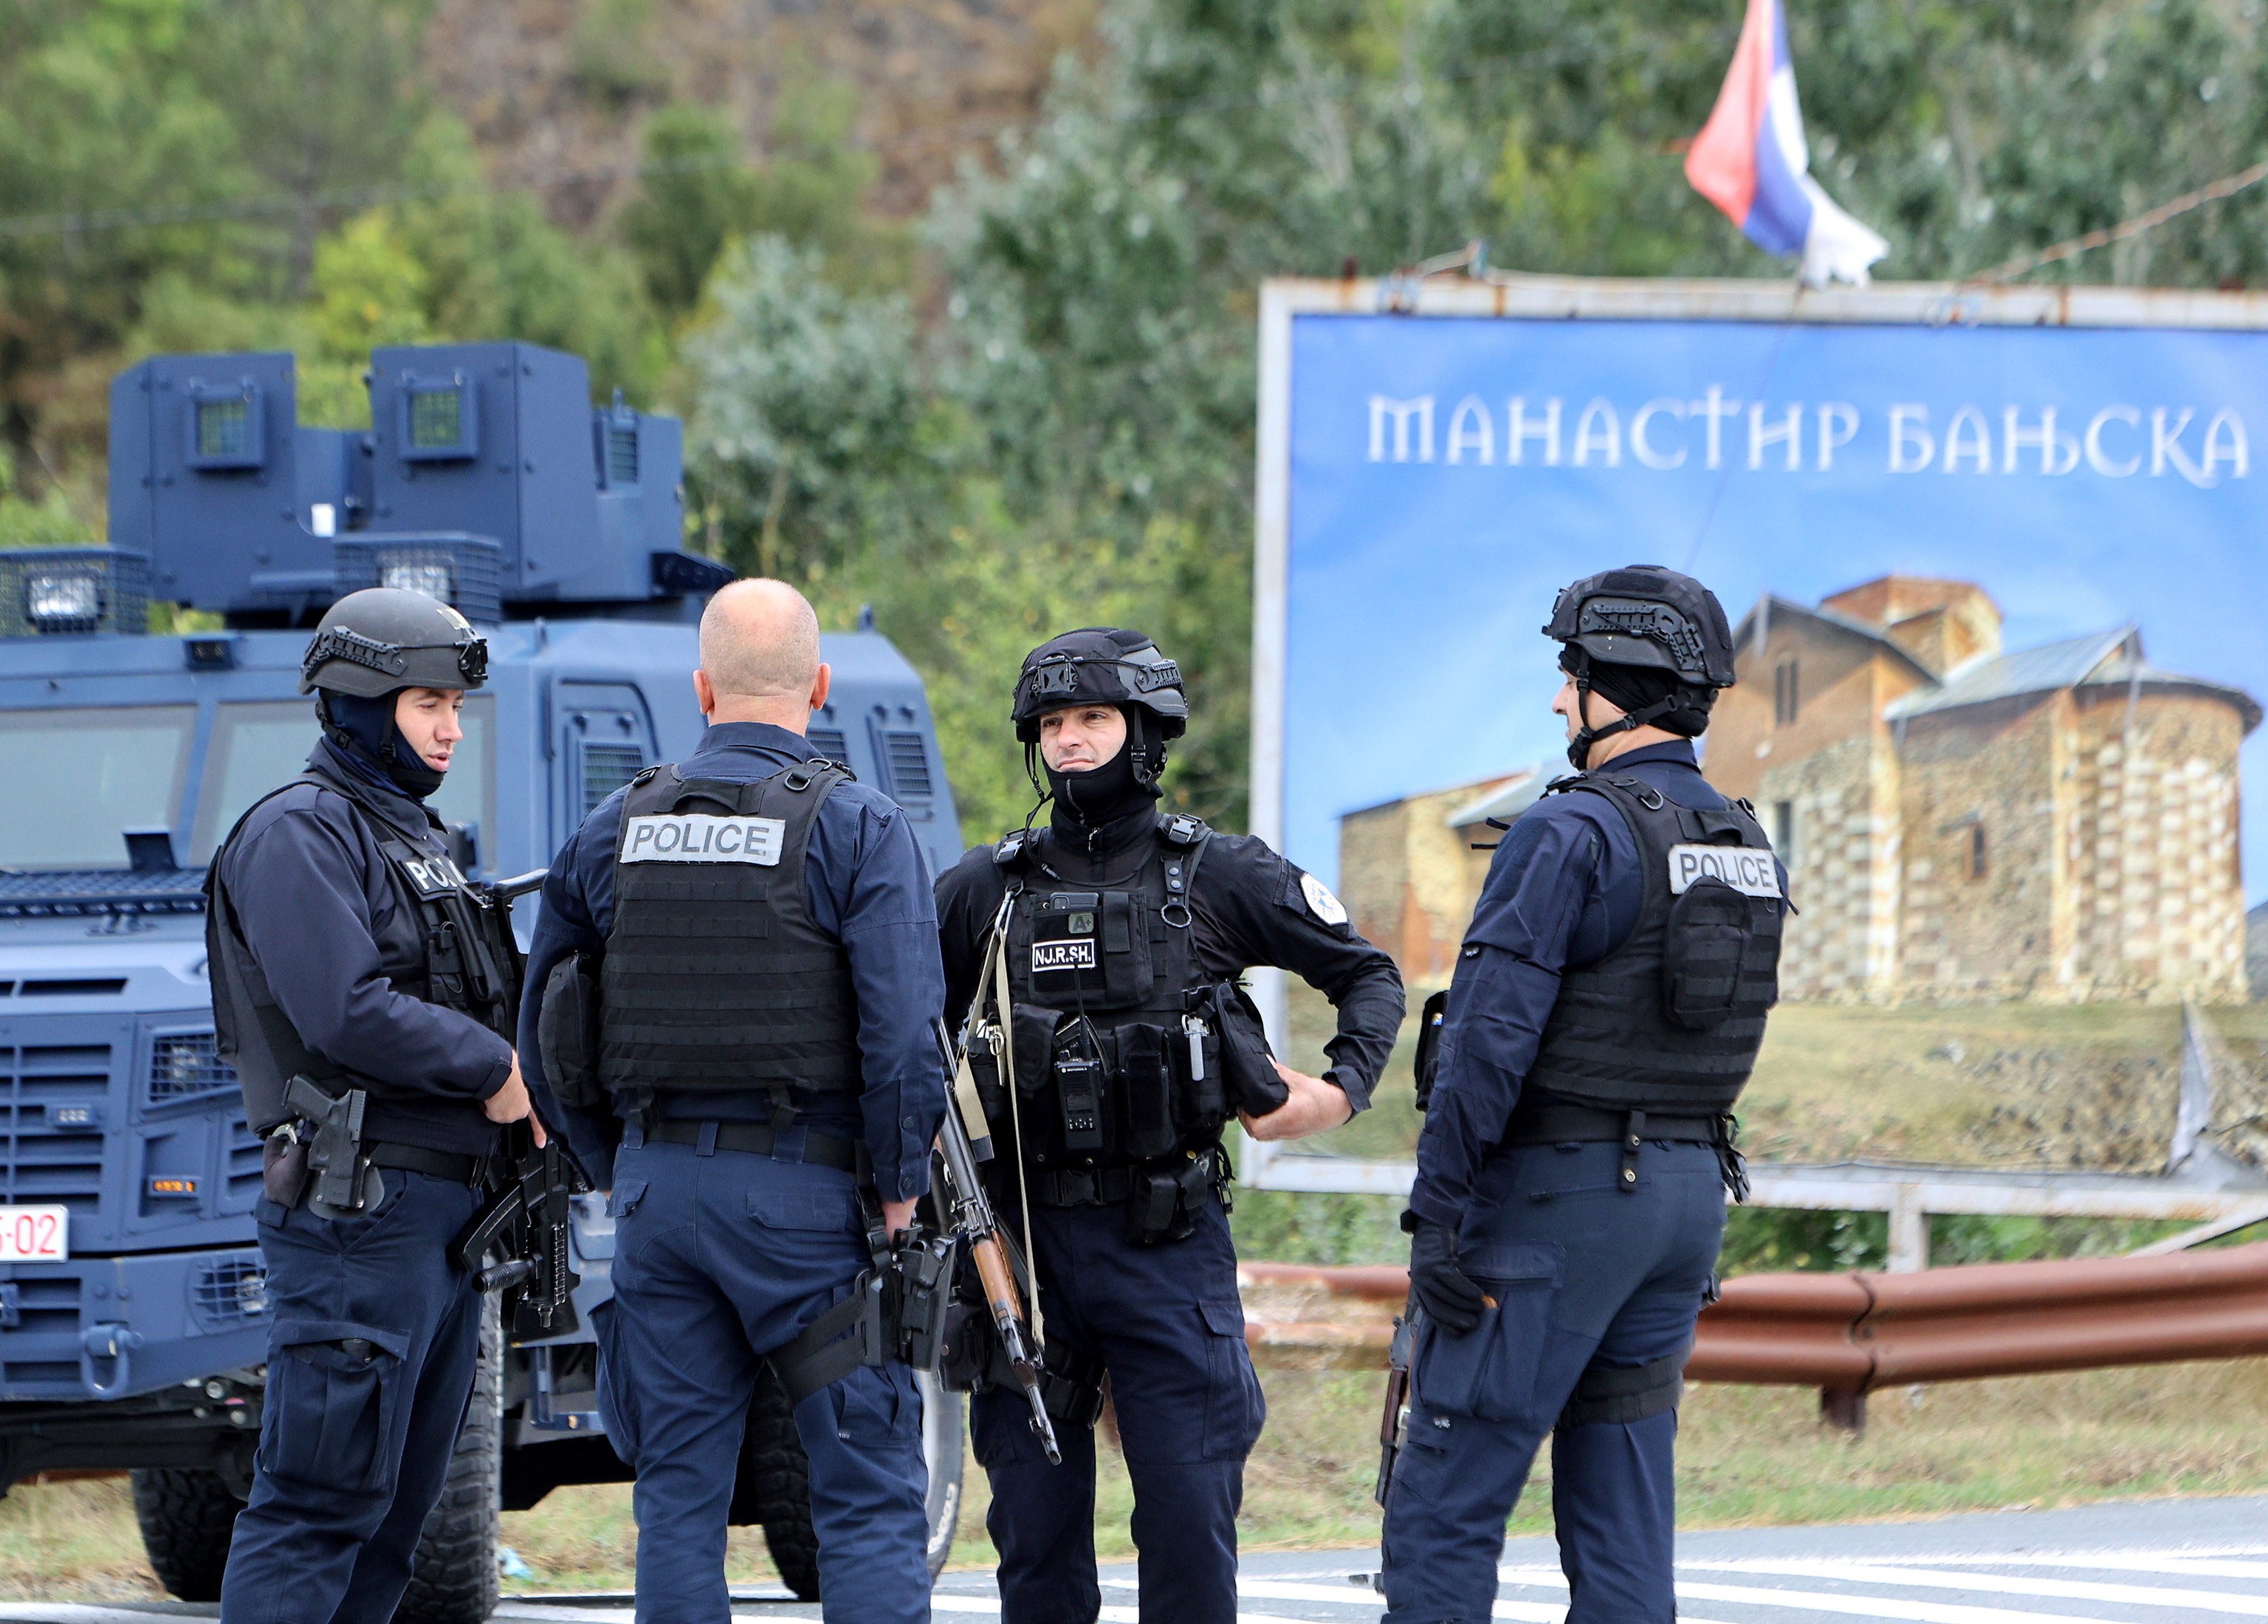 Policías de Kosovo controlan una carretera cerca de Banjska.